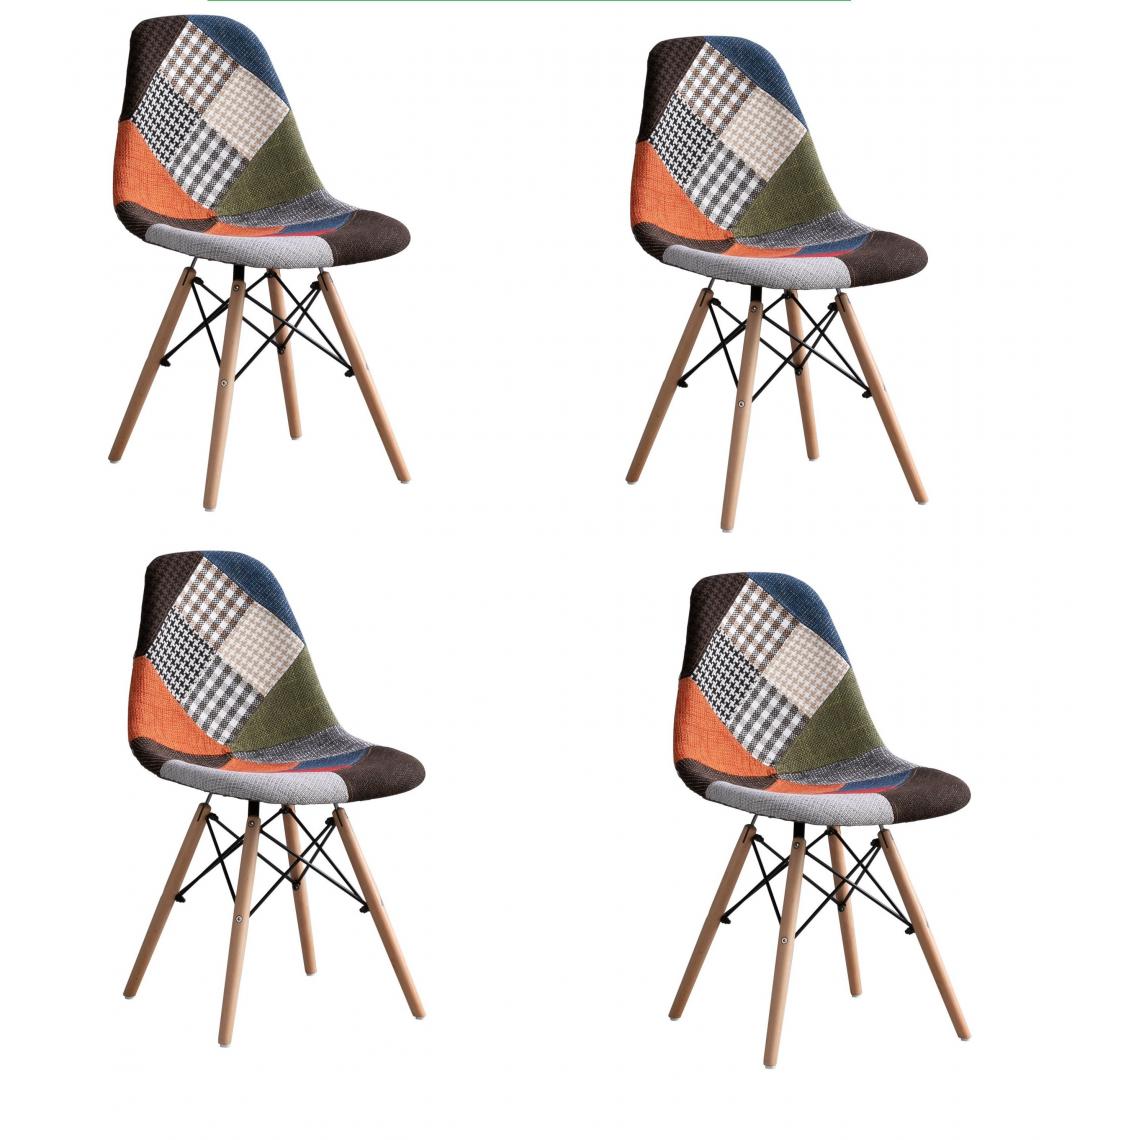 Fleda Trading - Eiffel modèle PP chaises pack de 4 PCS PatchWork tissu d'ameublement - Chaises